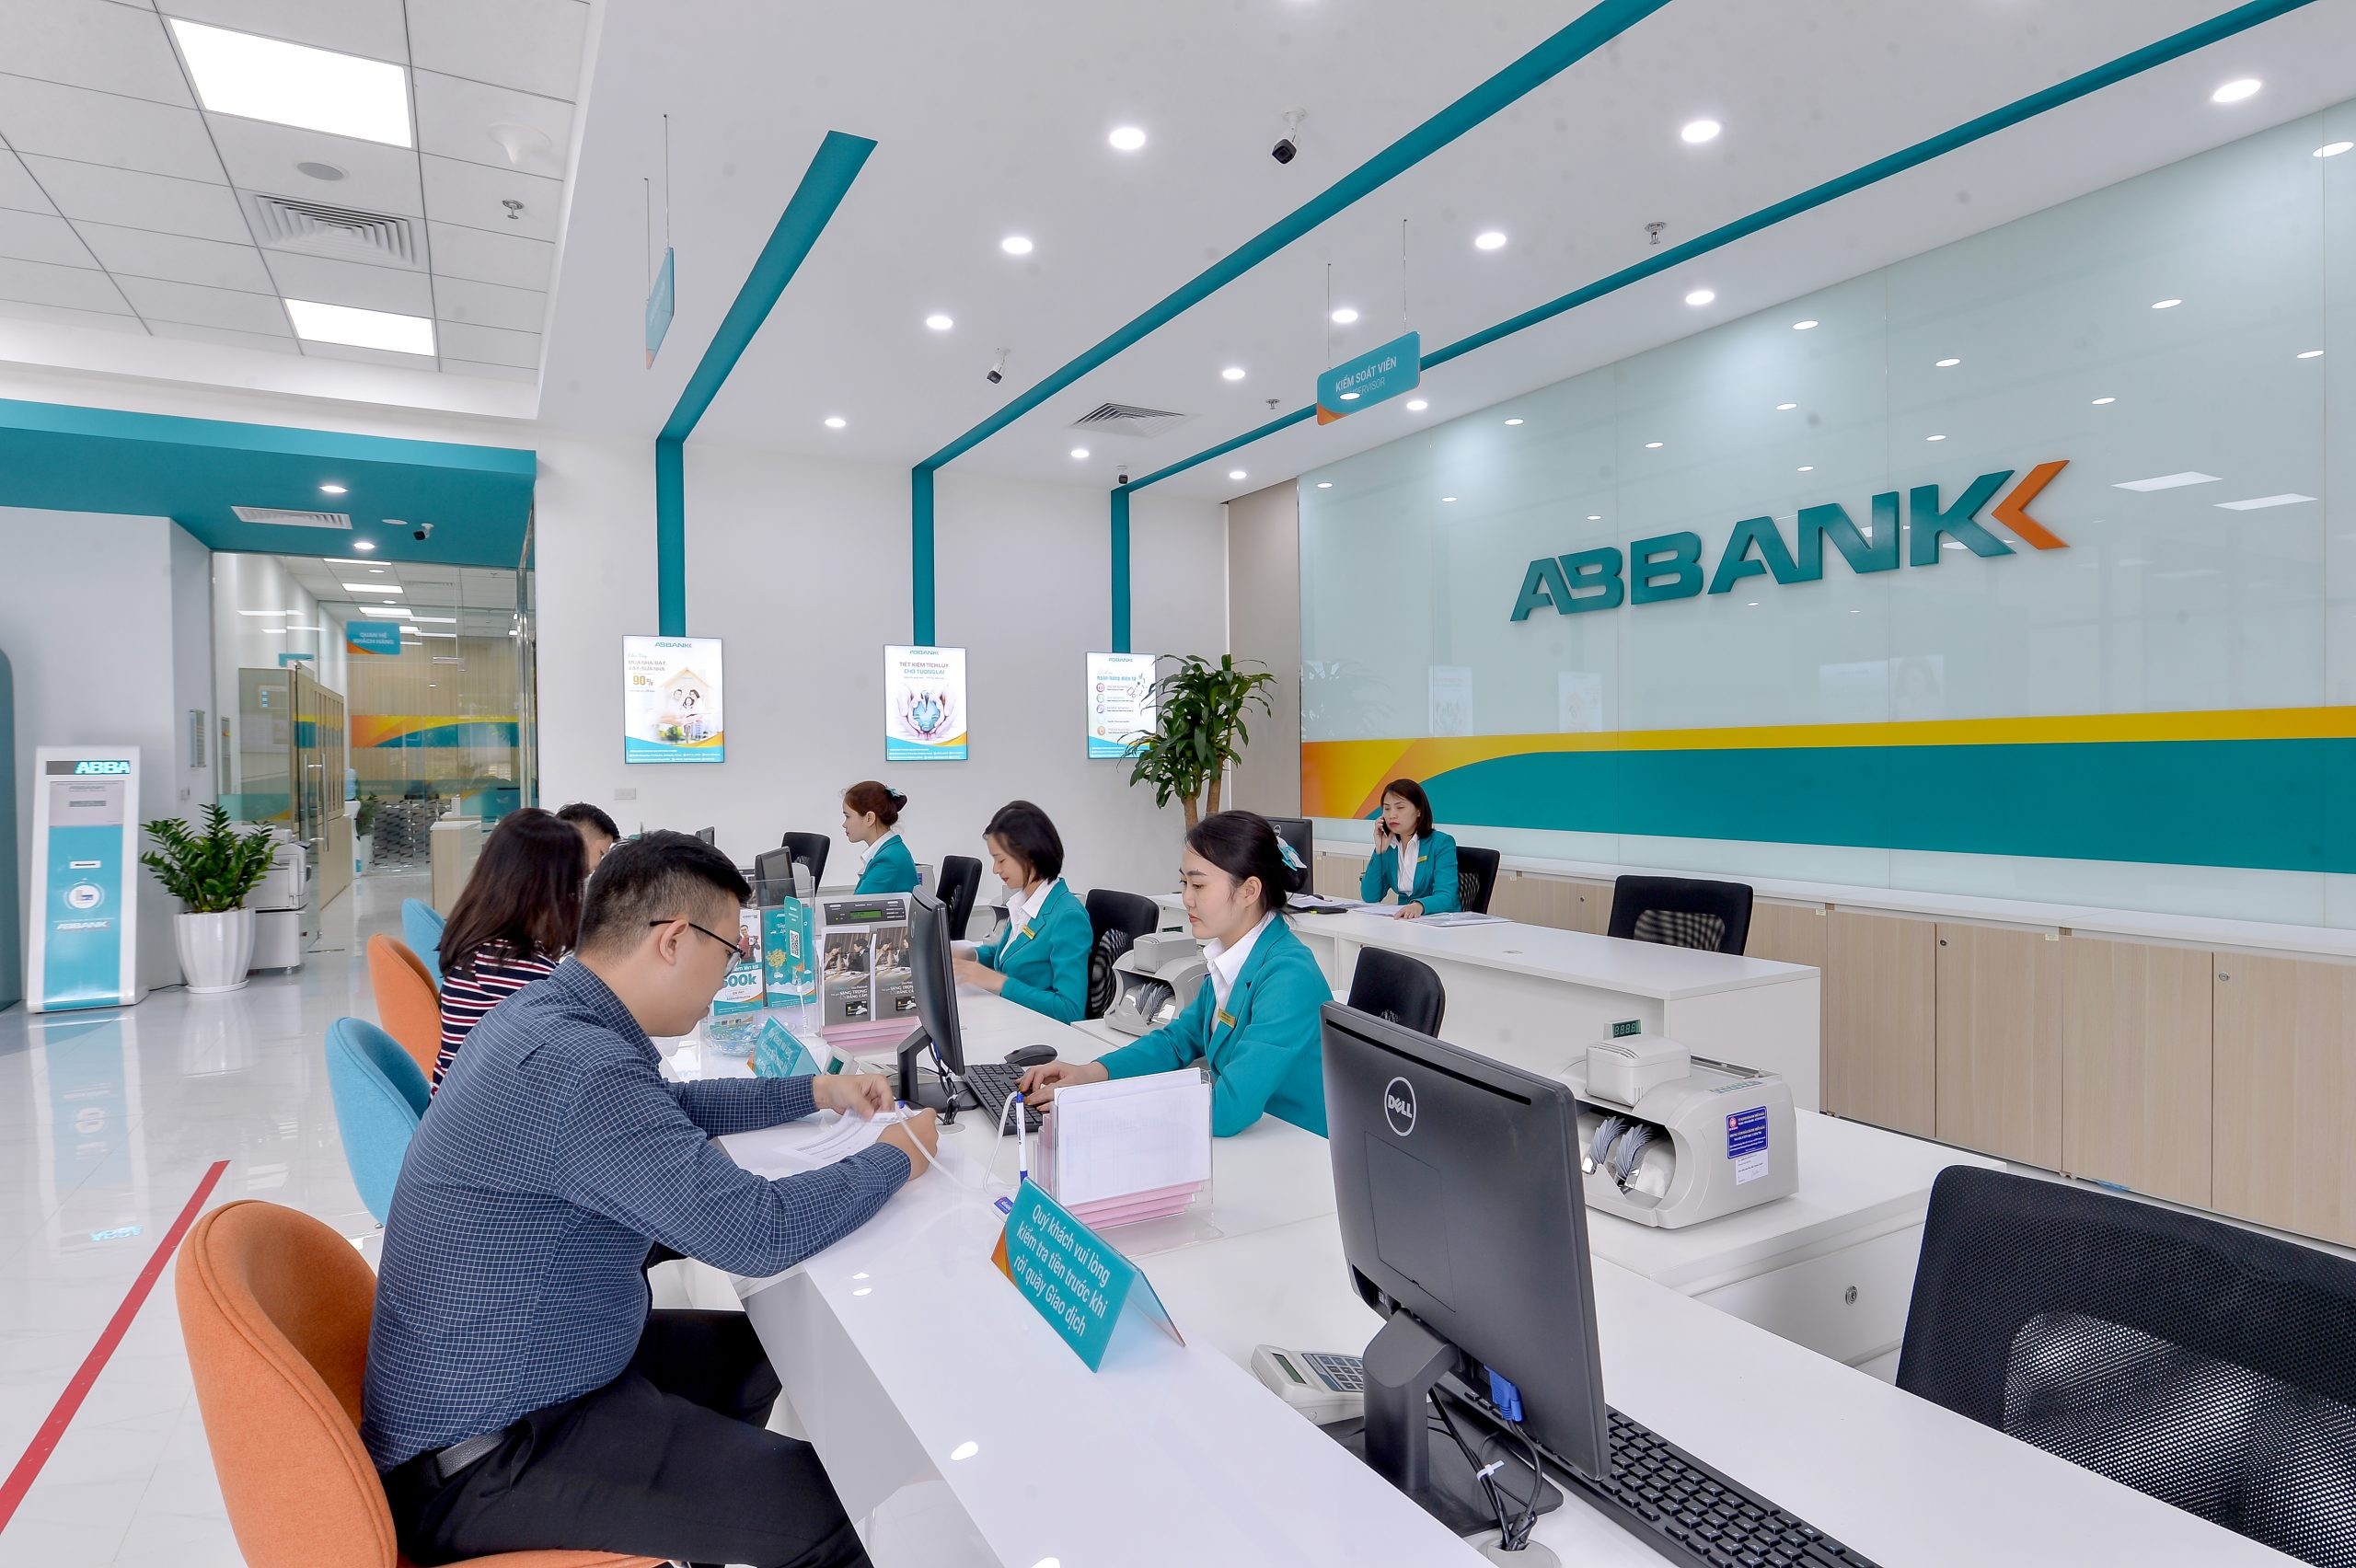 
Theo thông báo, ABBank sẽ chốt danh sách cổ đông vào ngày 31/5 để tiến hành chi trả cổ tức, tương ứng ngày giao dịch không hưởng quyền là ngày 30/5. Ảnh minh họa
